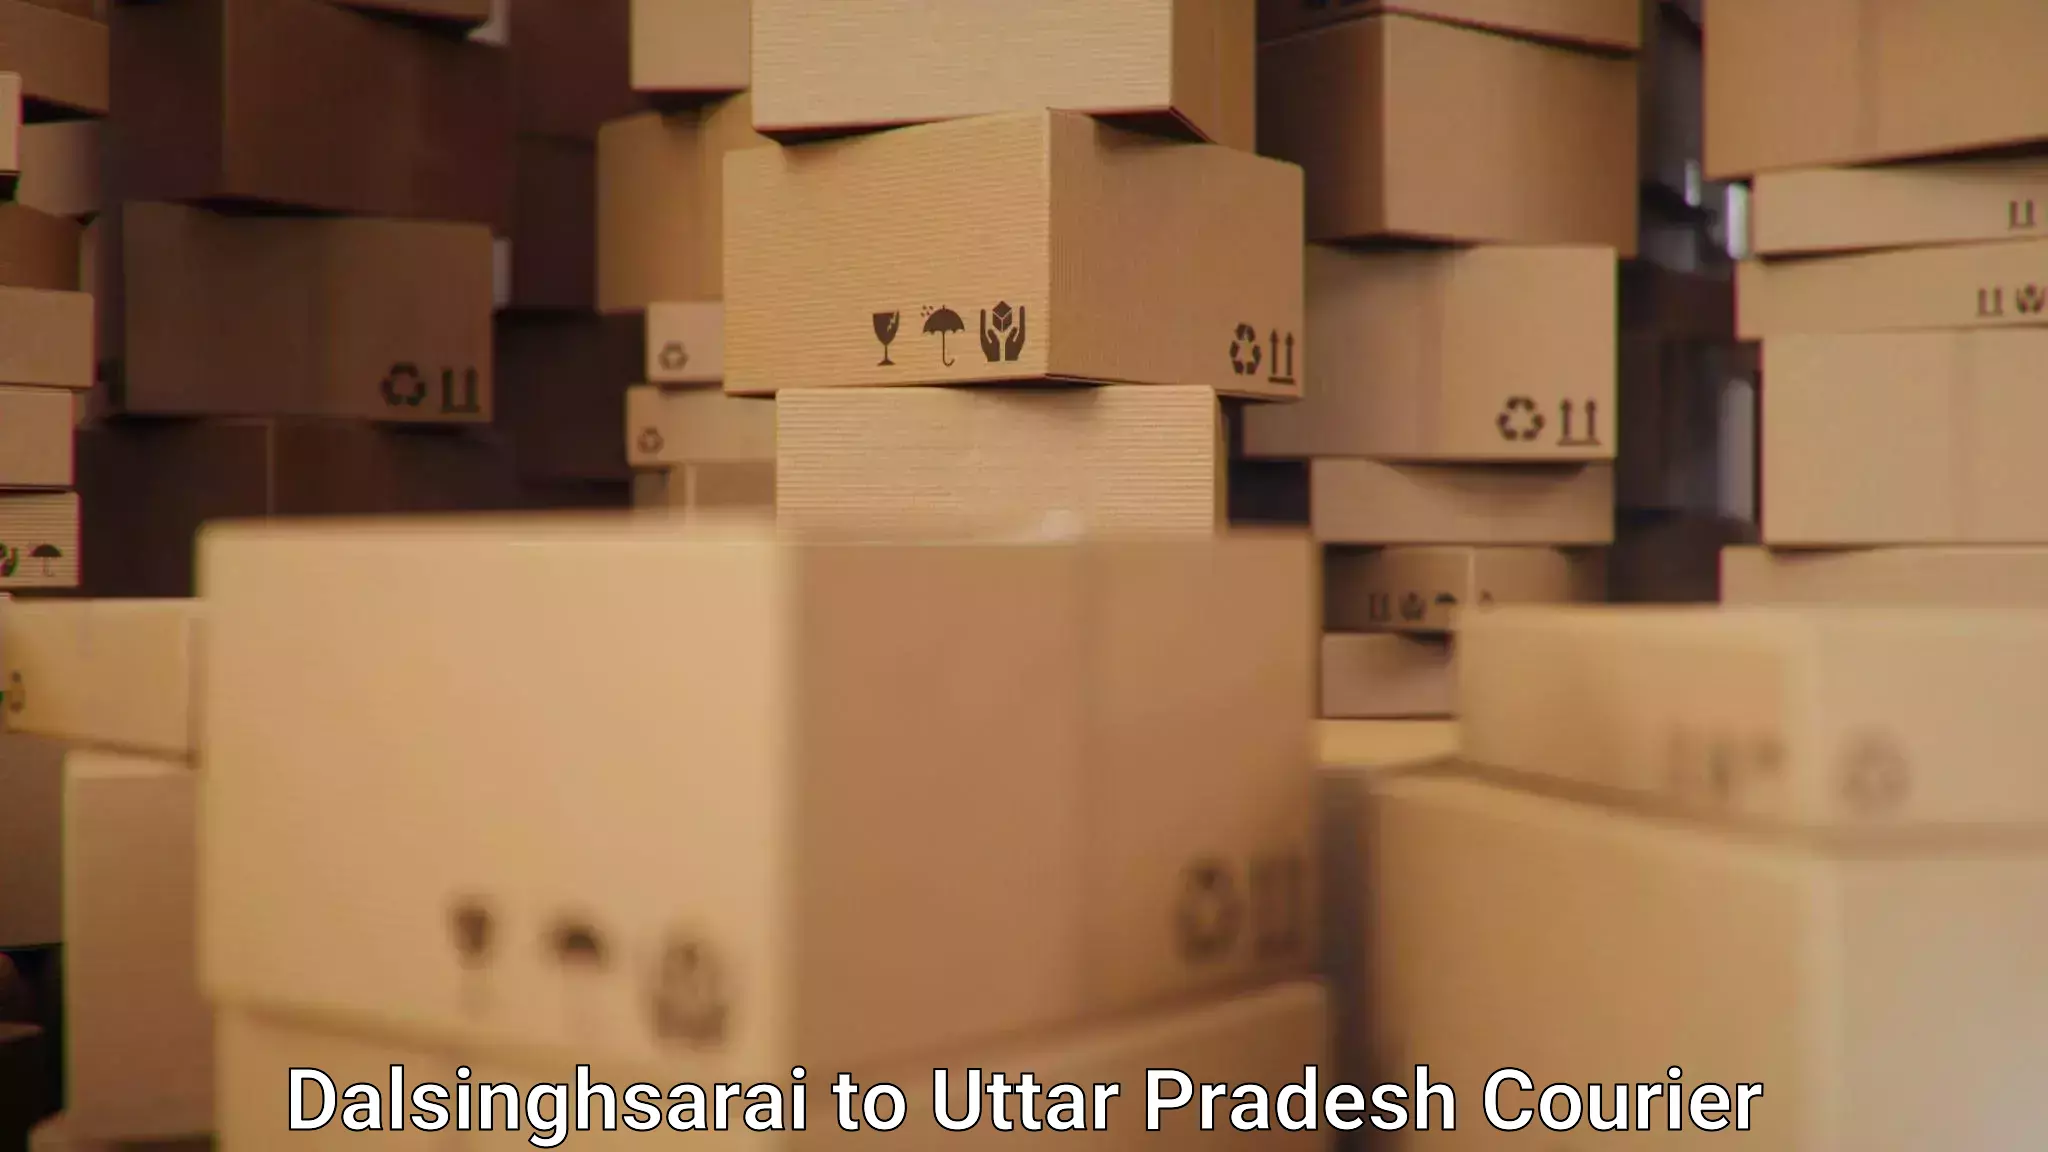 Quick parcel dispatch Dalsinghsarai to Khatauli